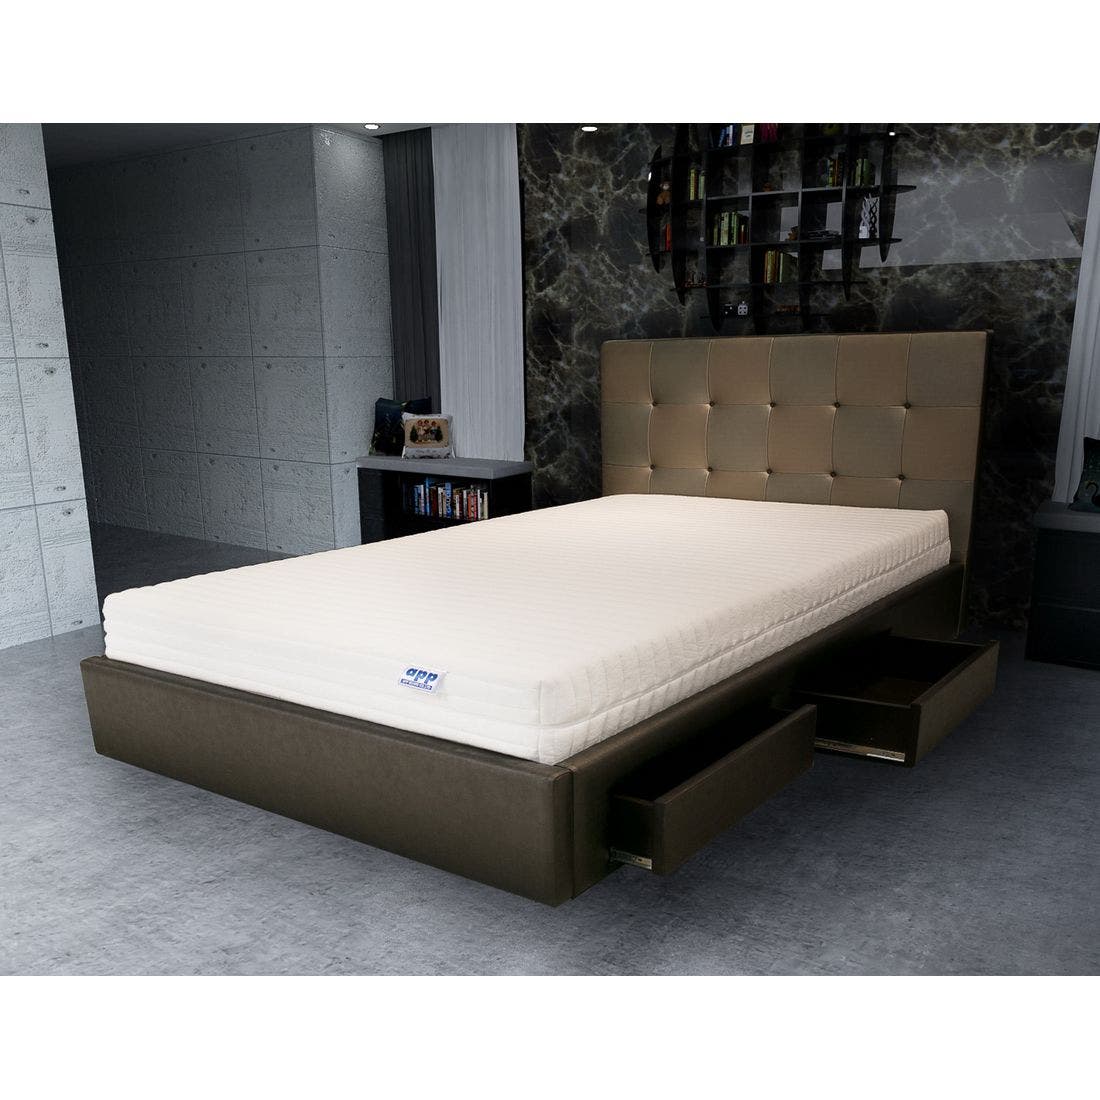 39001630-mattress-bedding-mattresses-latex-mattresses-31